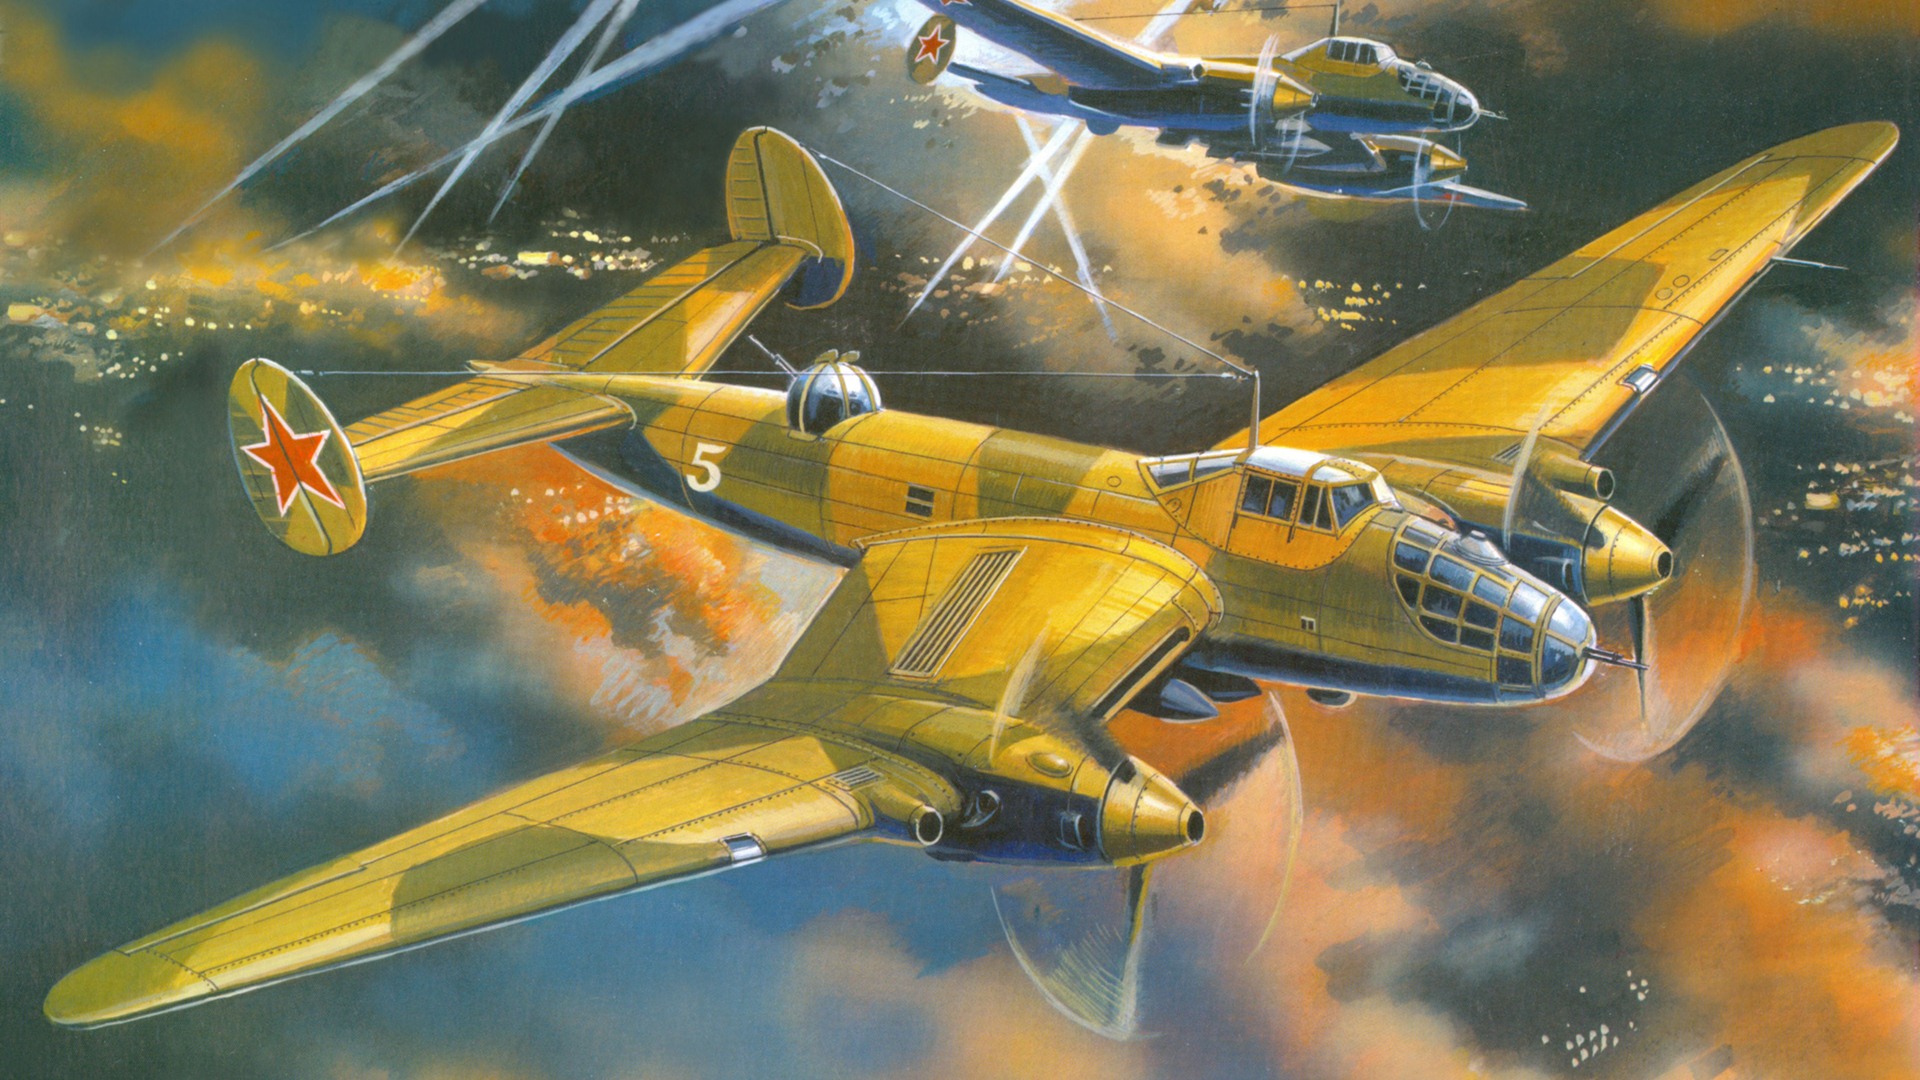 Militares vuelo de las aeronaves exquisitos pintura #18 - 1920x1080